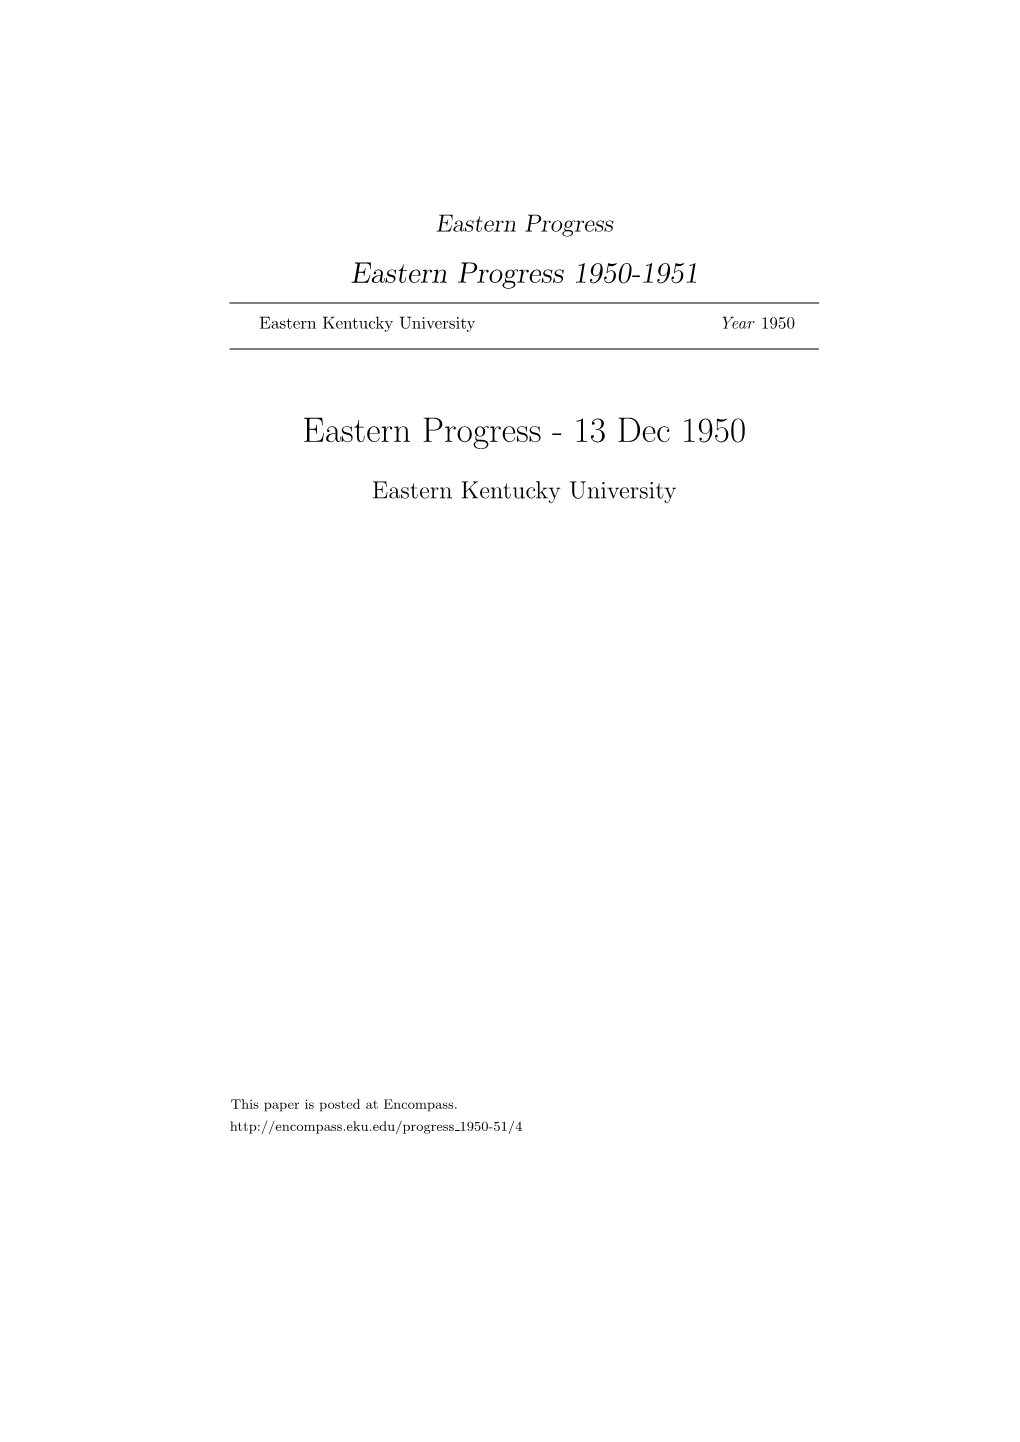 Eastern Progress Eastern Progress 1950-1951